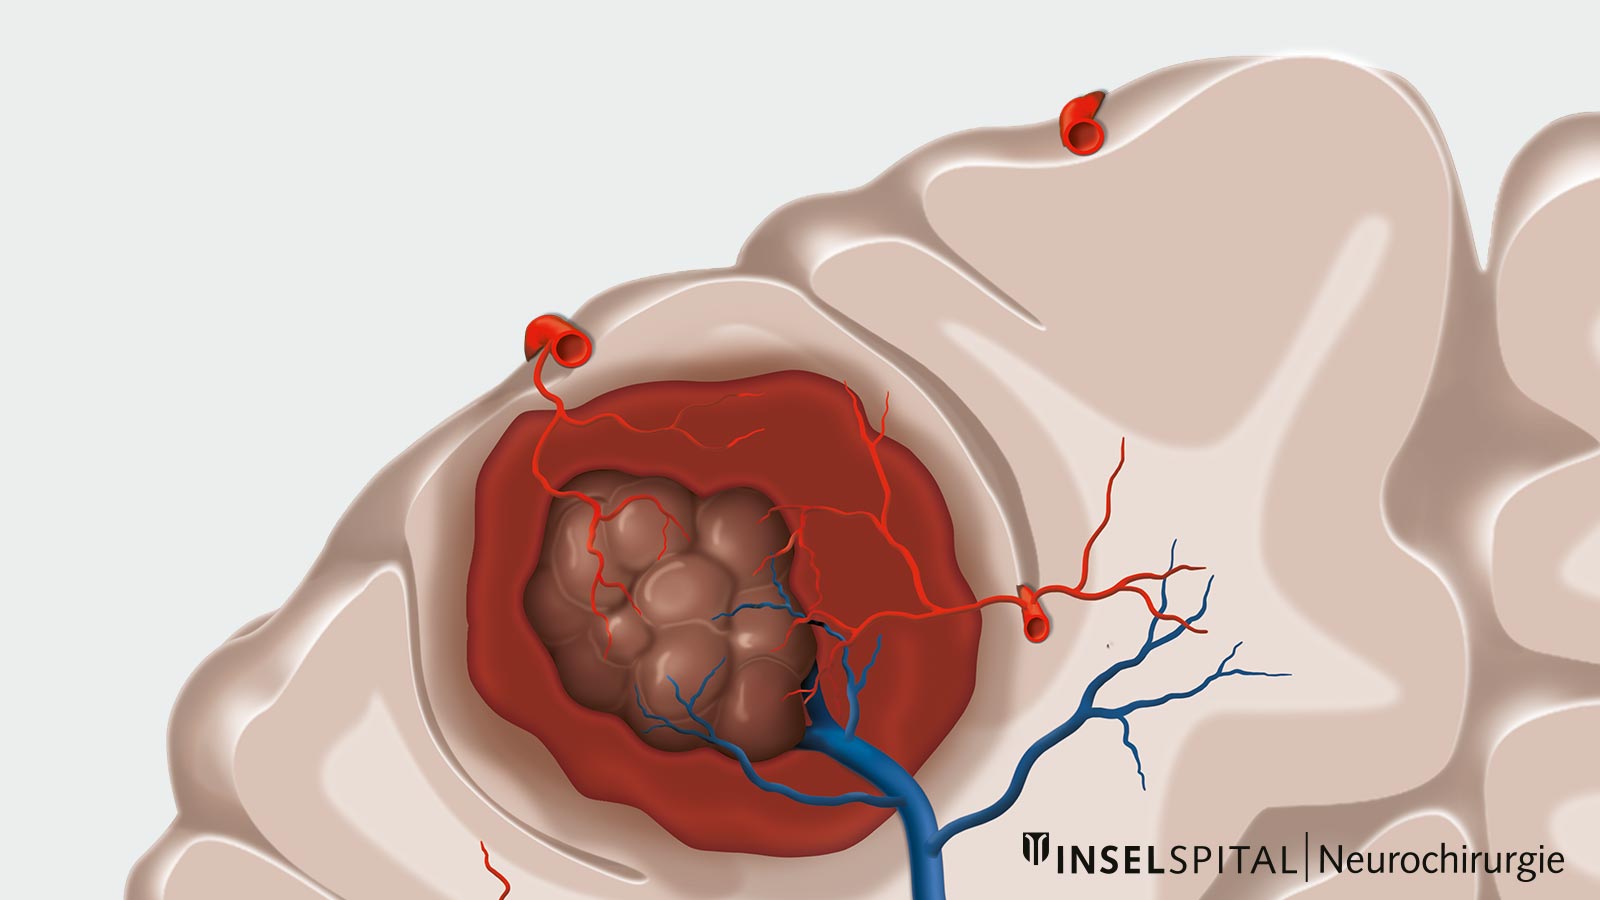 Zeichnung mit eingeblutetem Kavernom. Mit dem Kavernom verbunden sind auch einige Blutgefässe (Arterien rot, Venen blau).